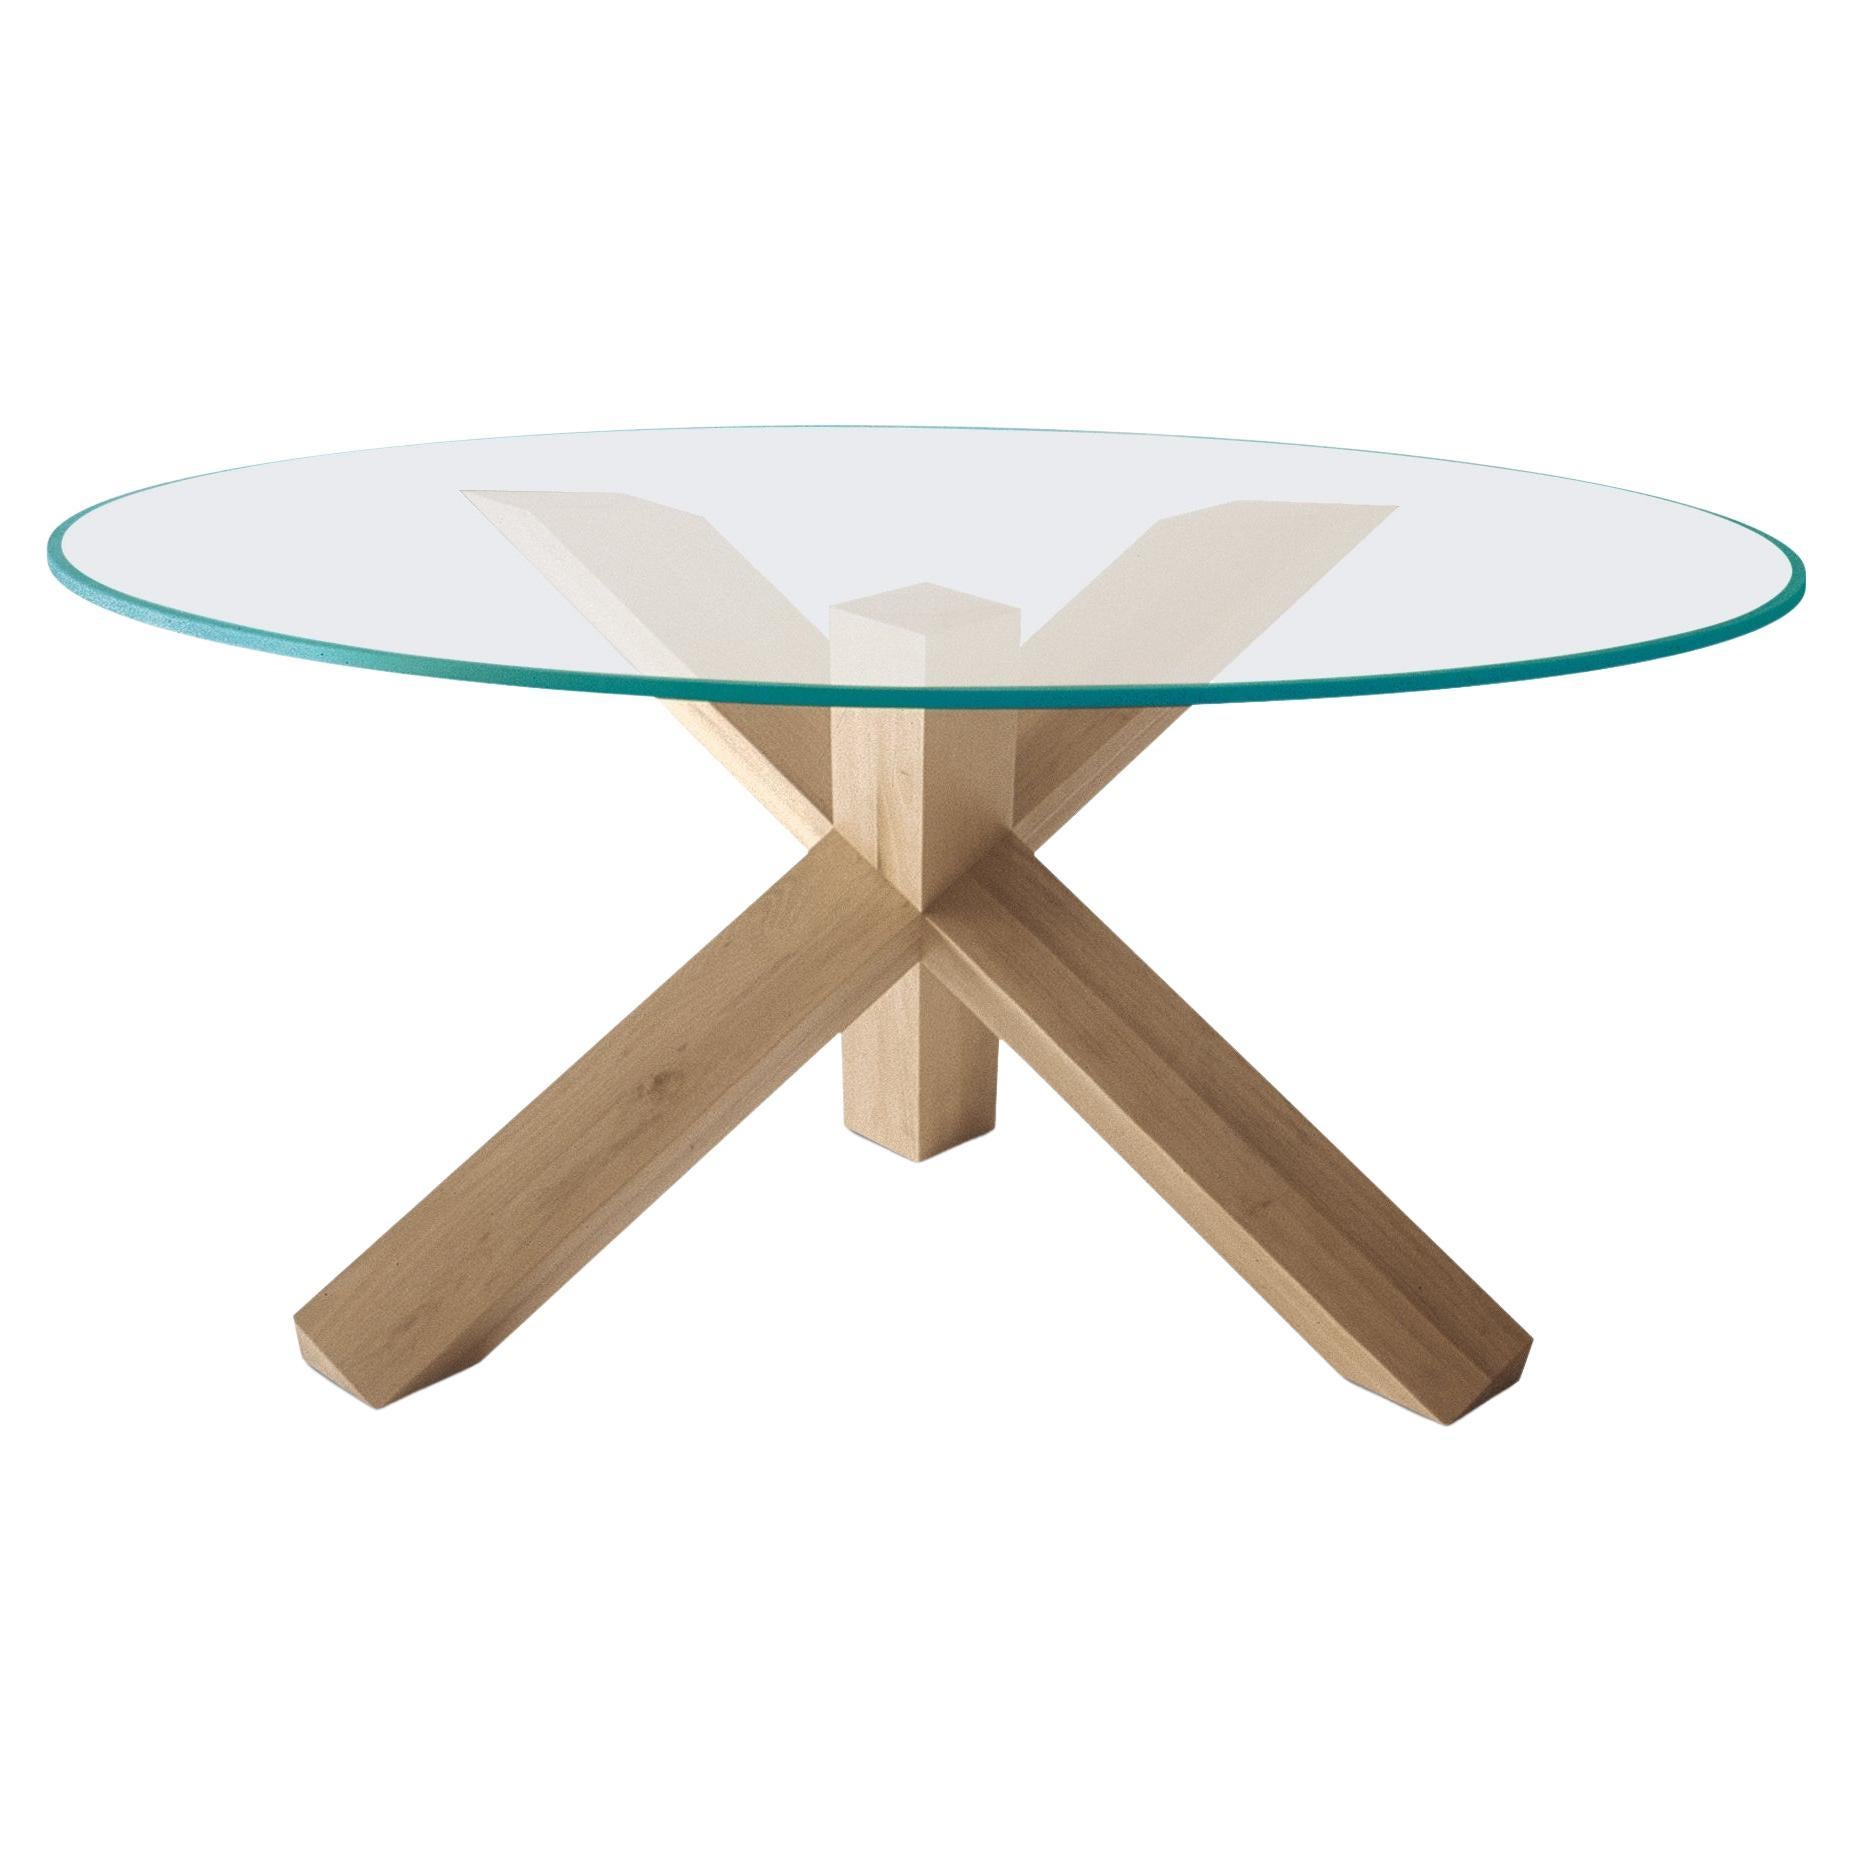 Mario Bellini La Rotonda Table by Cassina